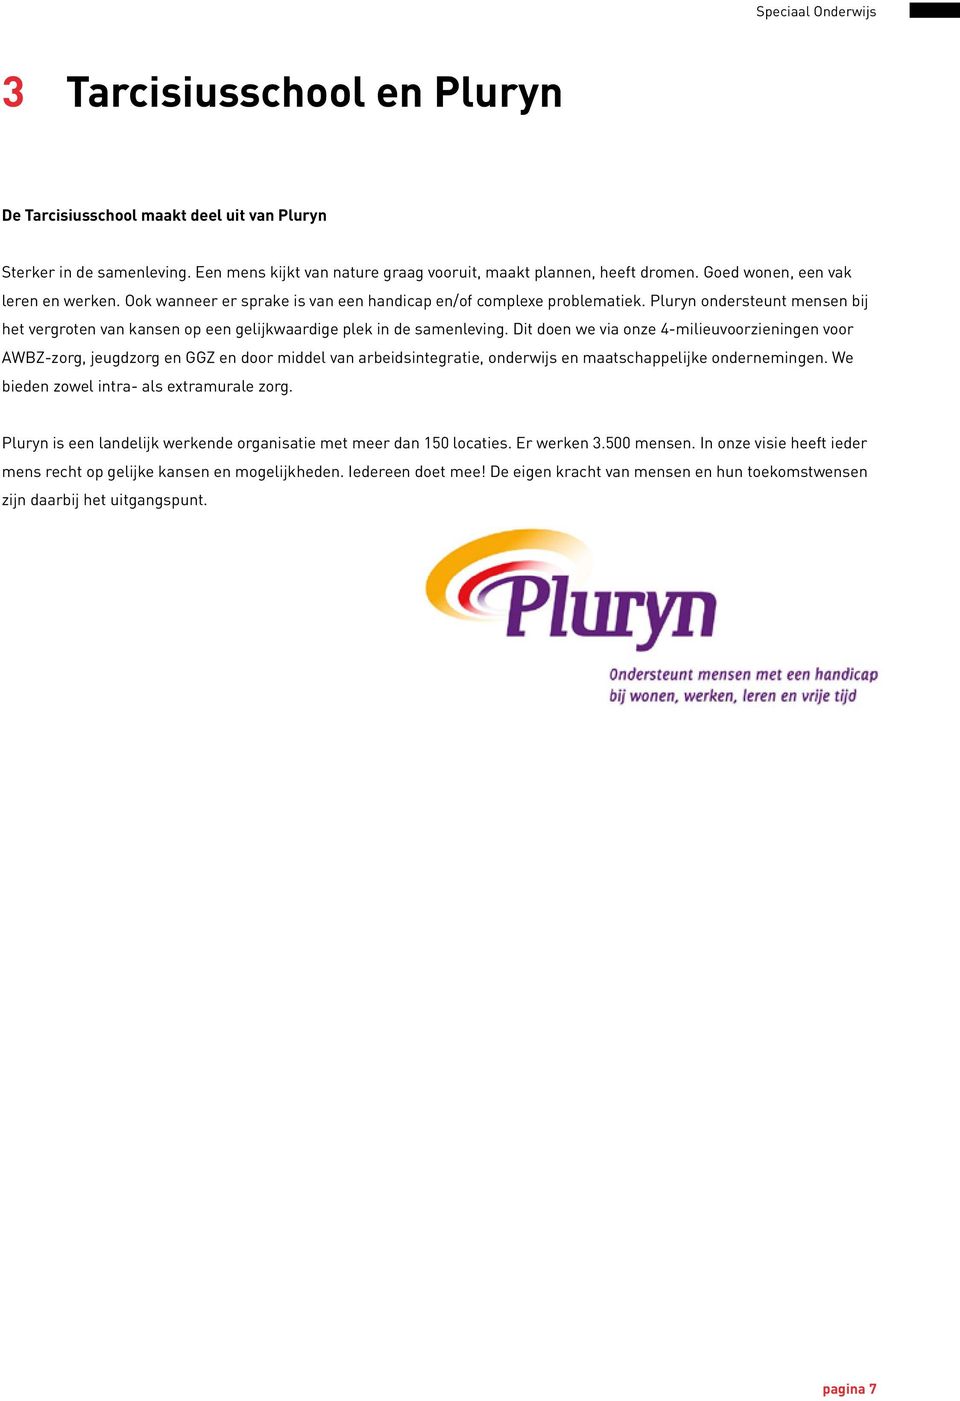 Pluryn ondersteunt mensen bij het vergroten van kansen op een gelijkwaardige plek in de samenleving.